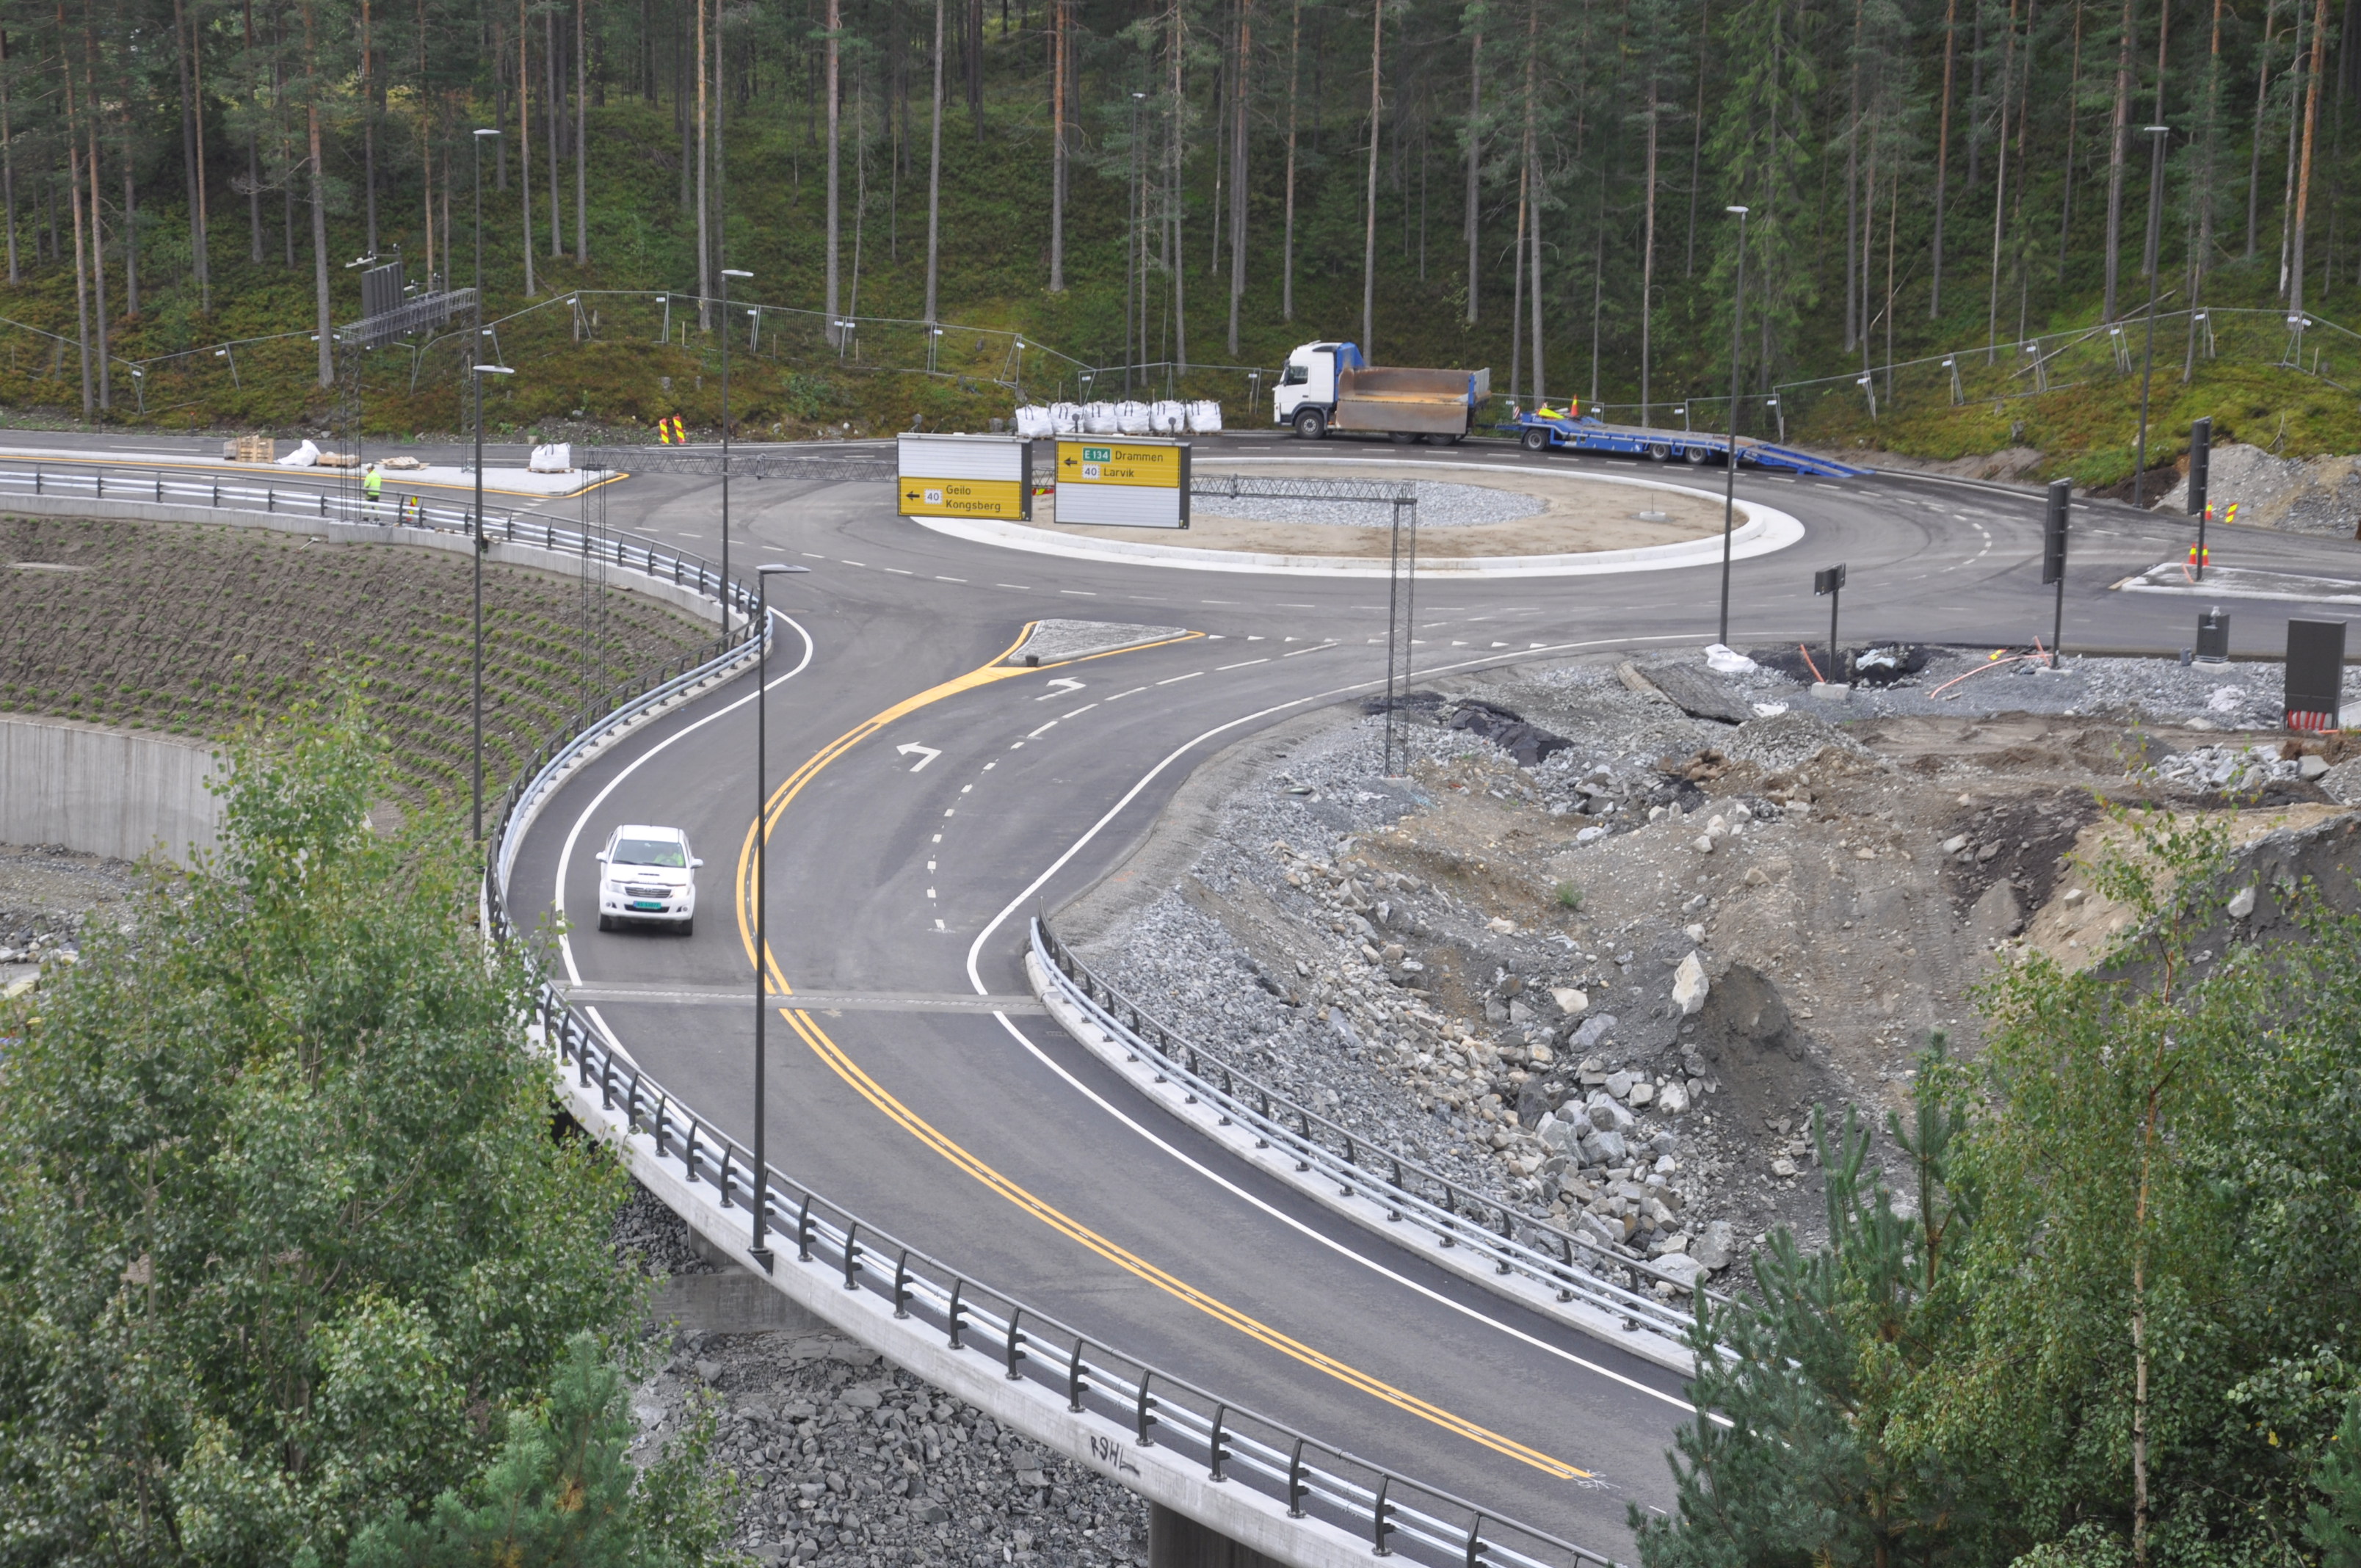 Her ves renseanlegget i Sellikdalen tar vegen inn til Teknologiparken av. (Foto: Kjell Wold)